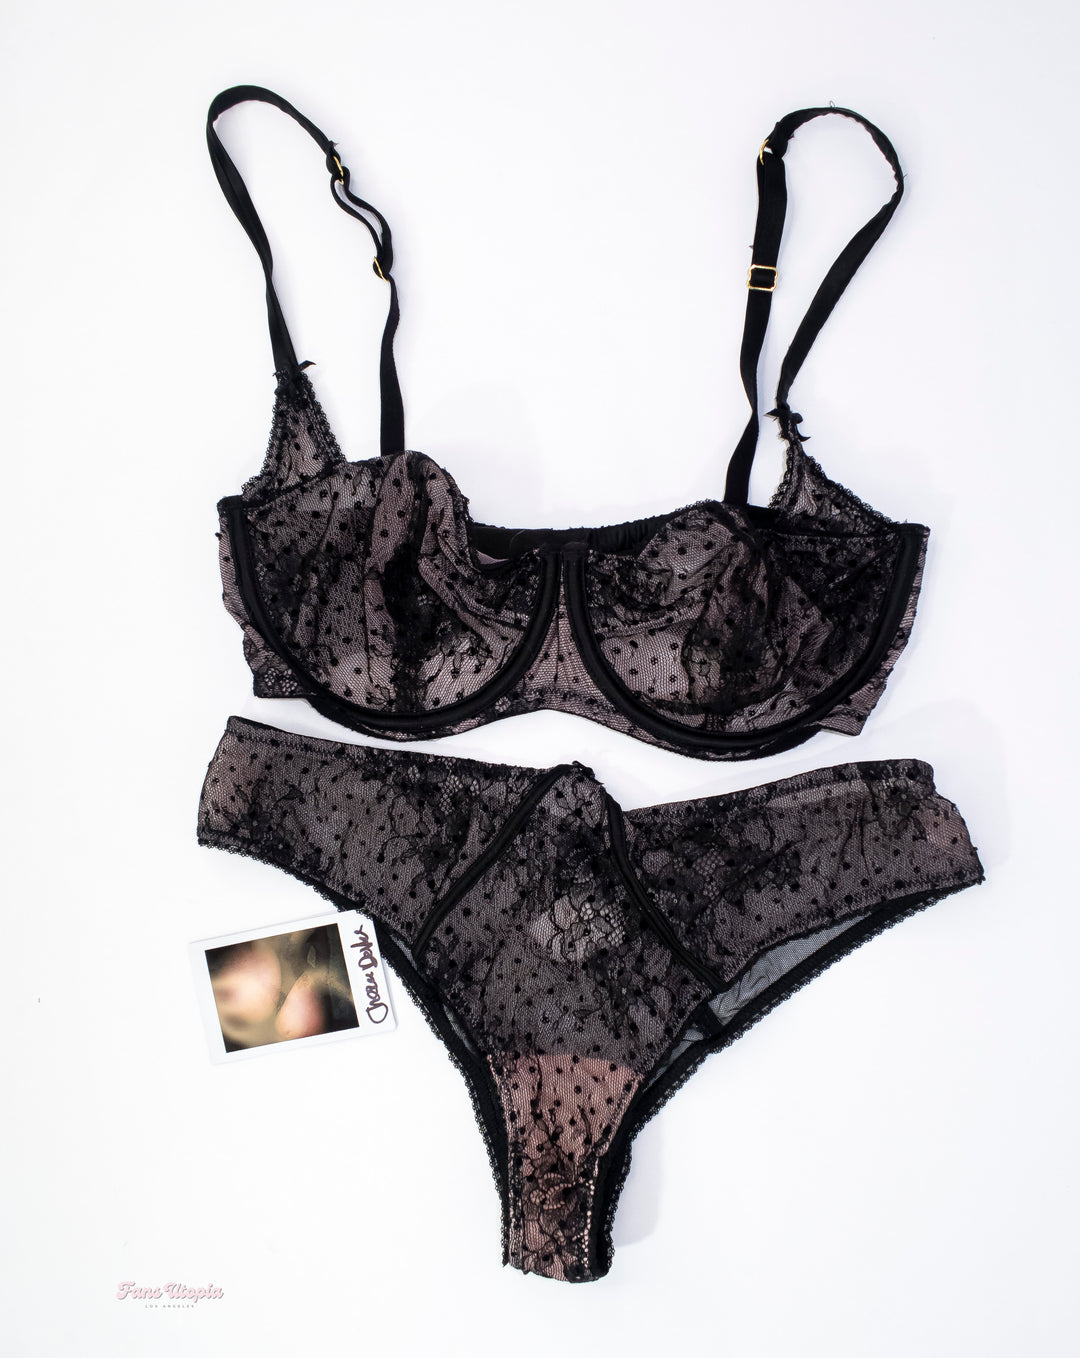 Cherie DeVille Pink & Black Flowers Lace Lingerie Set + Autographed Polaroid